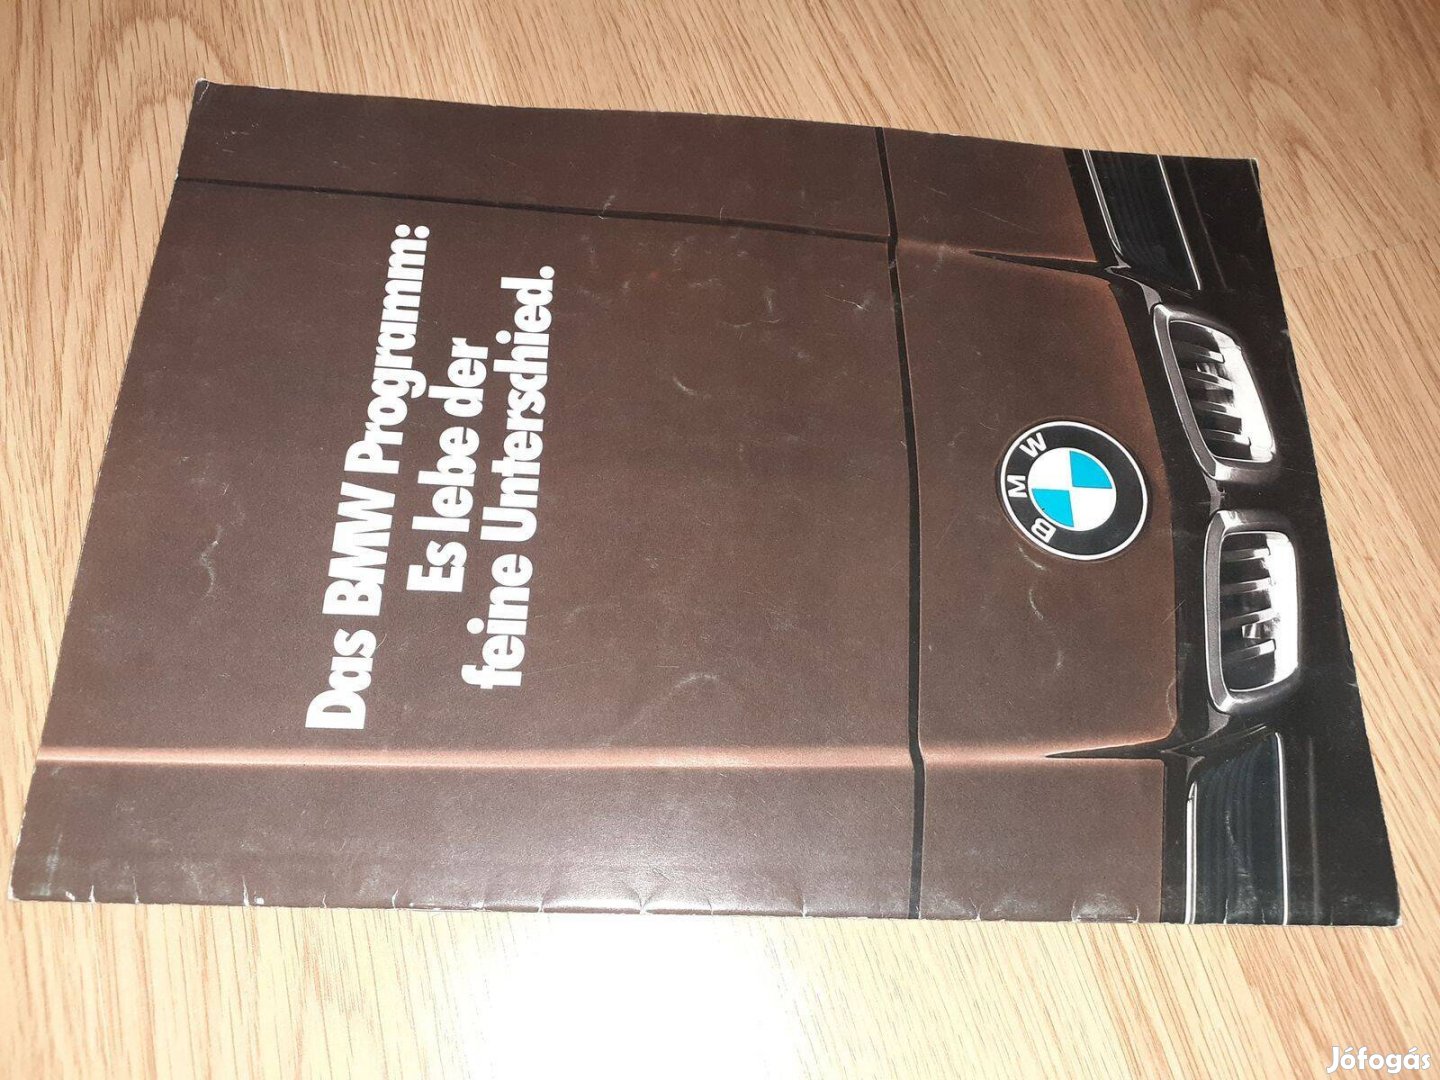 BMW Program (modellek) prospektus - 1978, német nyelvű